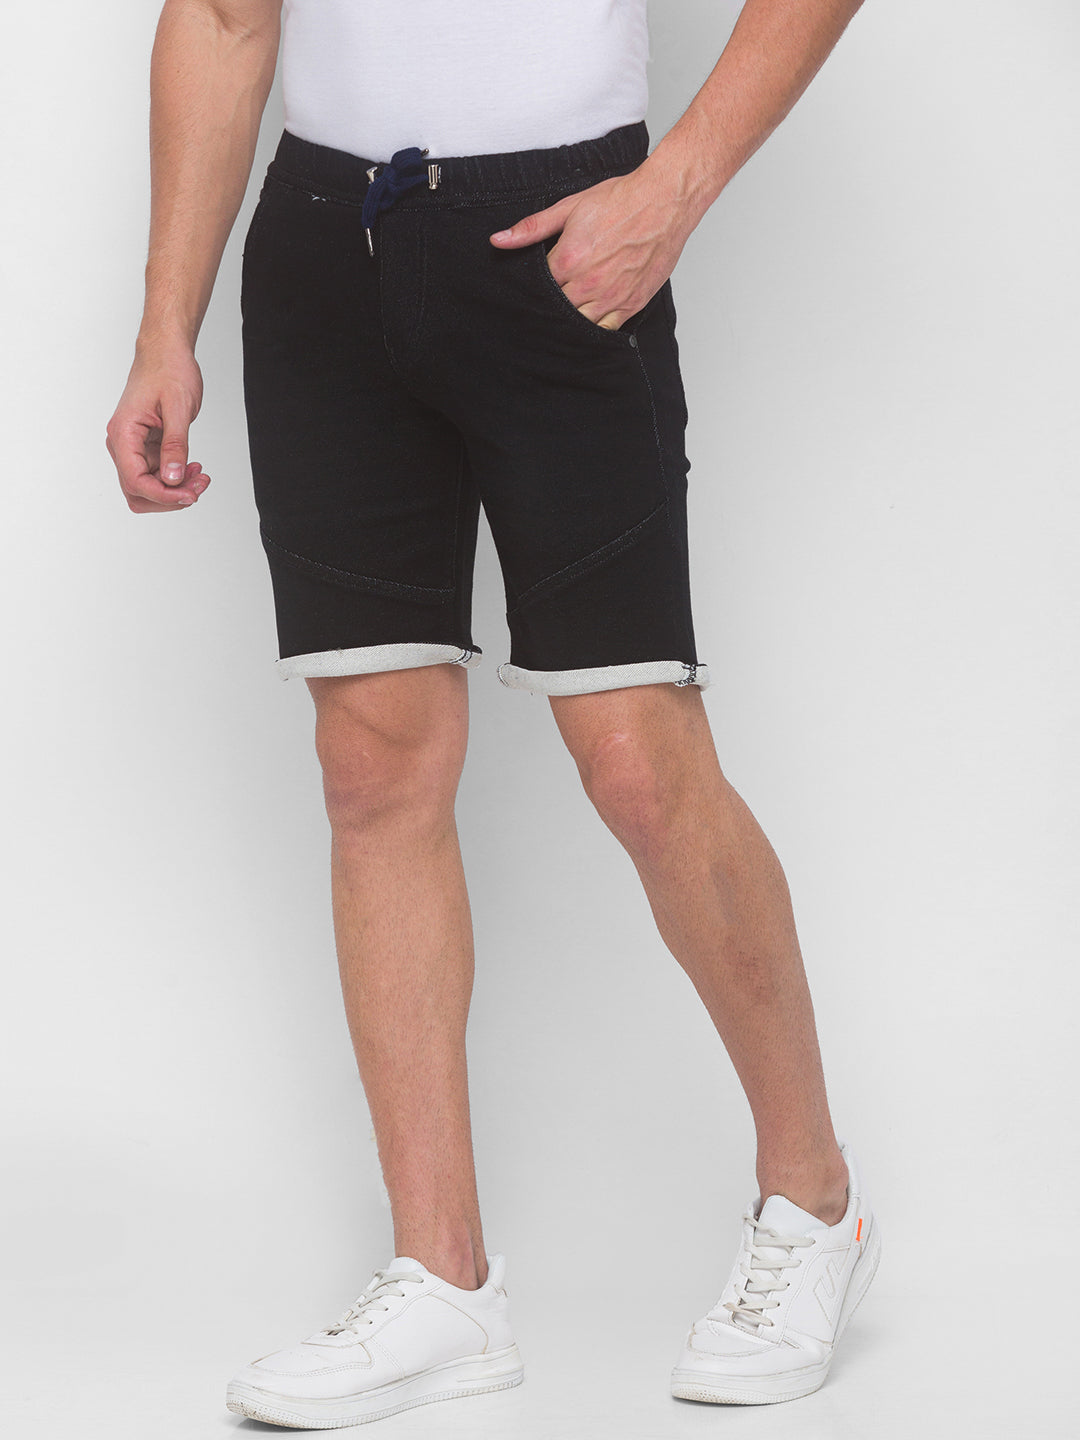 Raw Black Denim Shorts